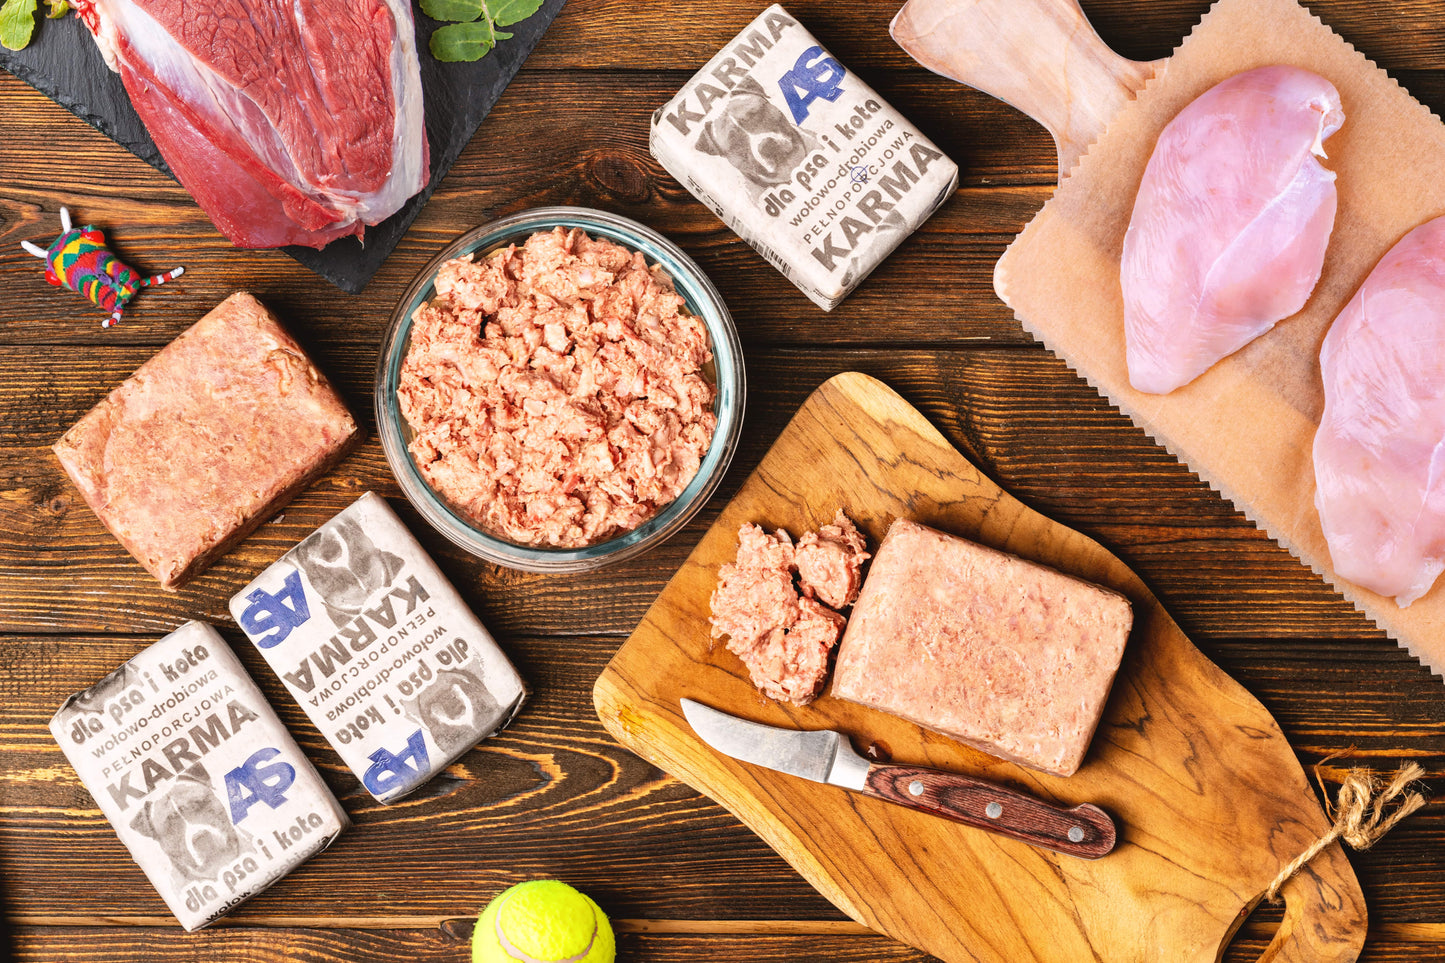 Mięso mrożone AS - 100% mięsa - 2 smaki - Zestaw 10kg